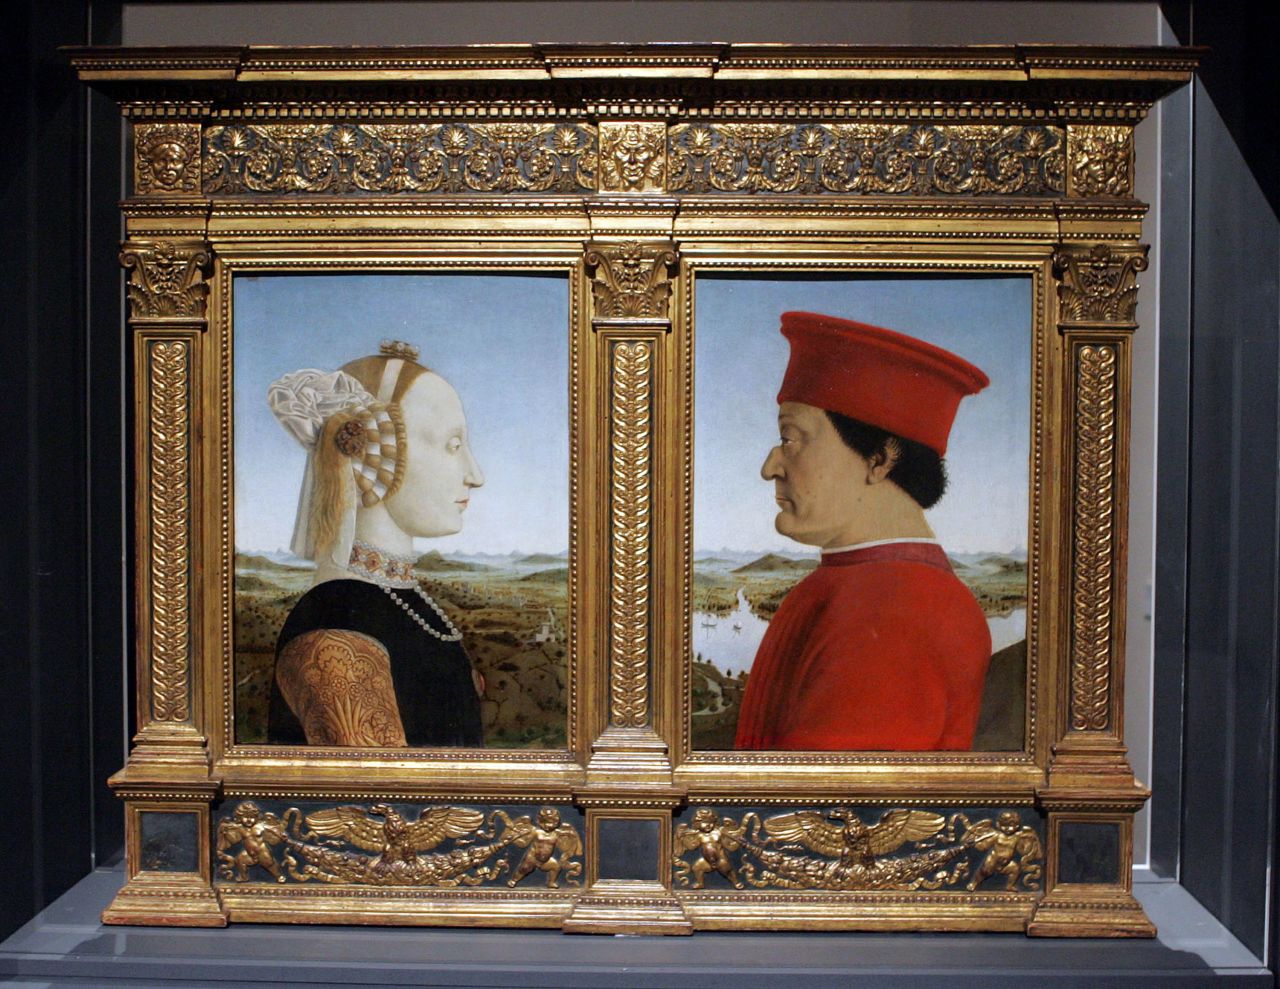 Piero della Francesca's portraits of Federico da Montefeltro and Battista Sforza is one of the iconic works of the Renaissance.